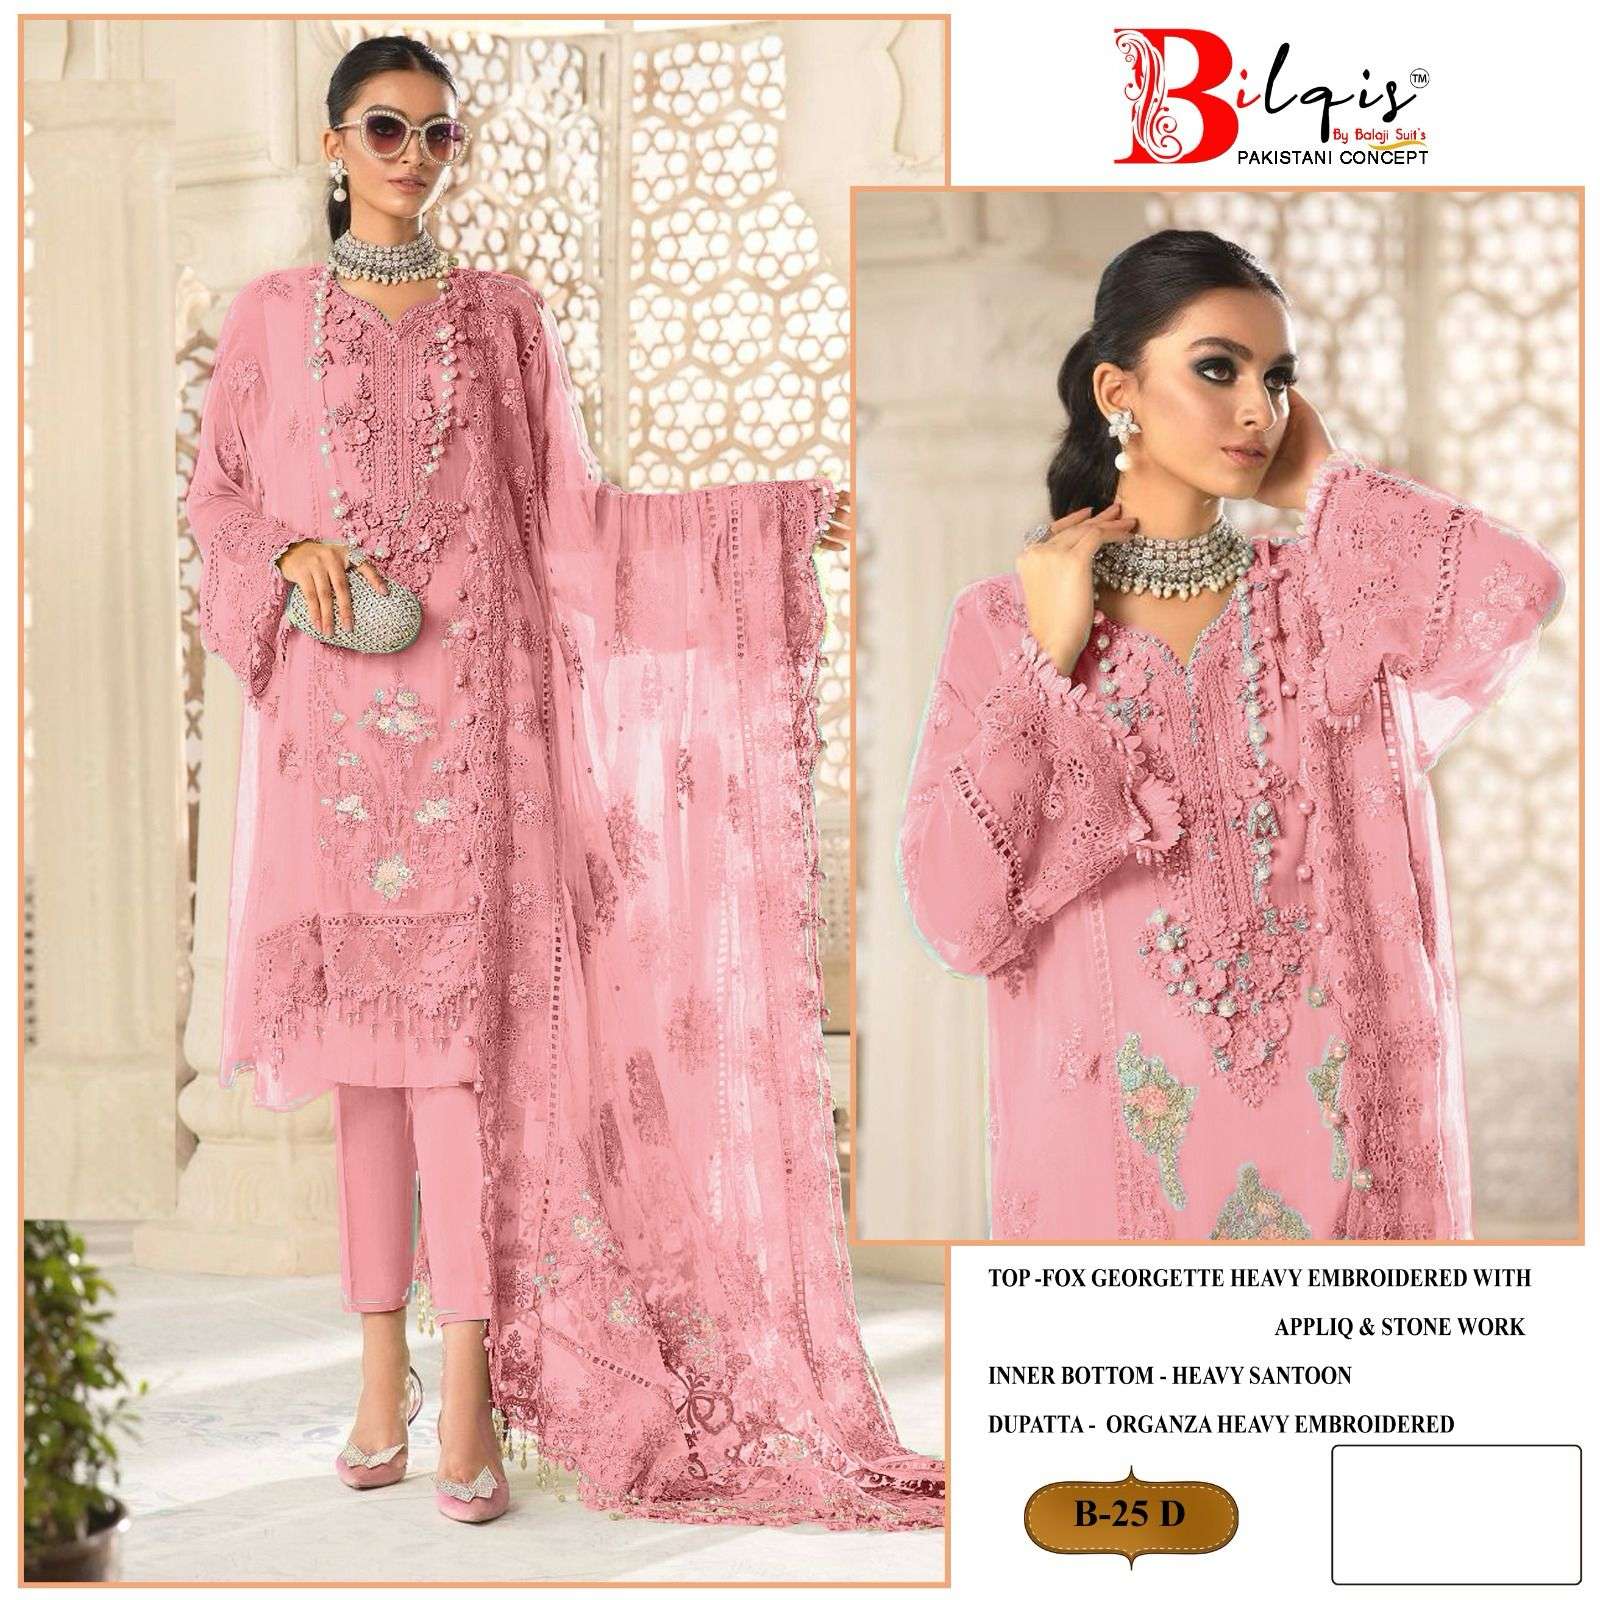 bilqis b-25 a to d series georgette designer pakistani suits wholesale collection